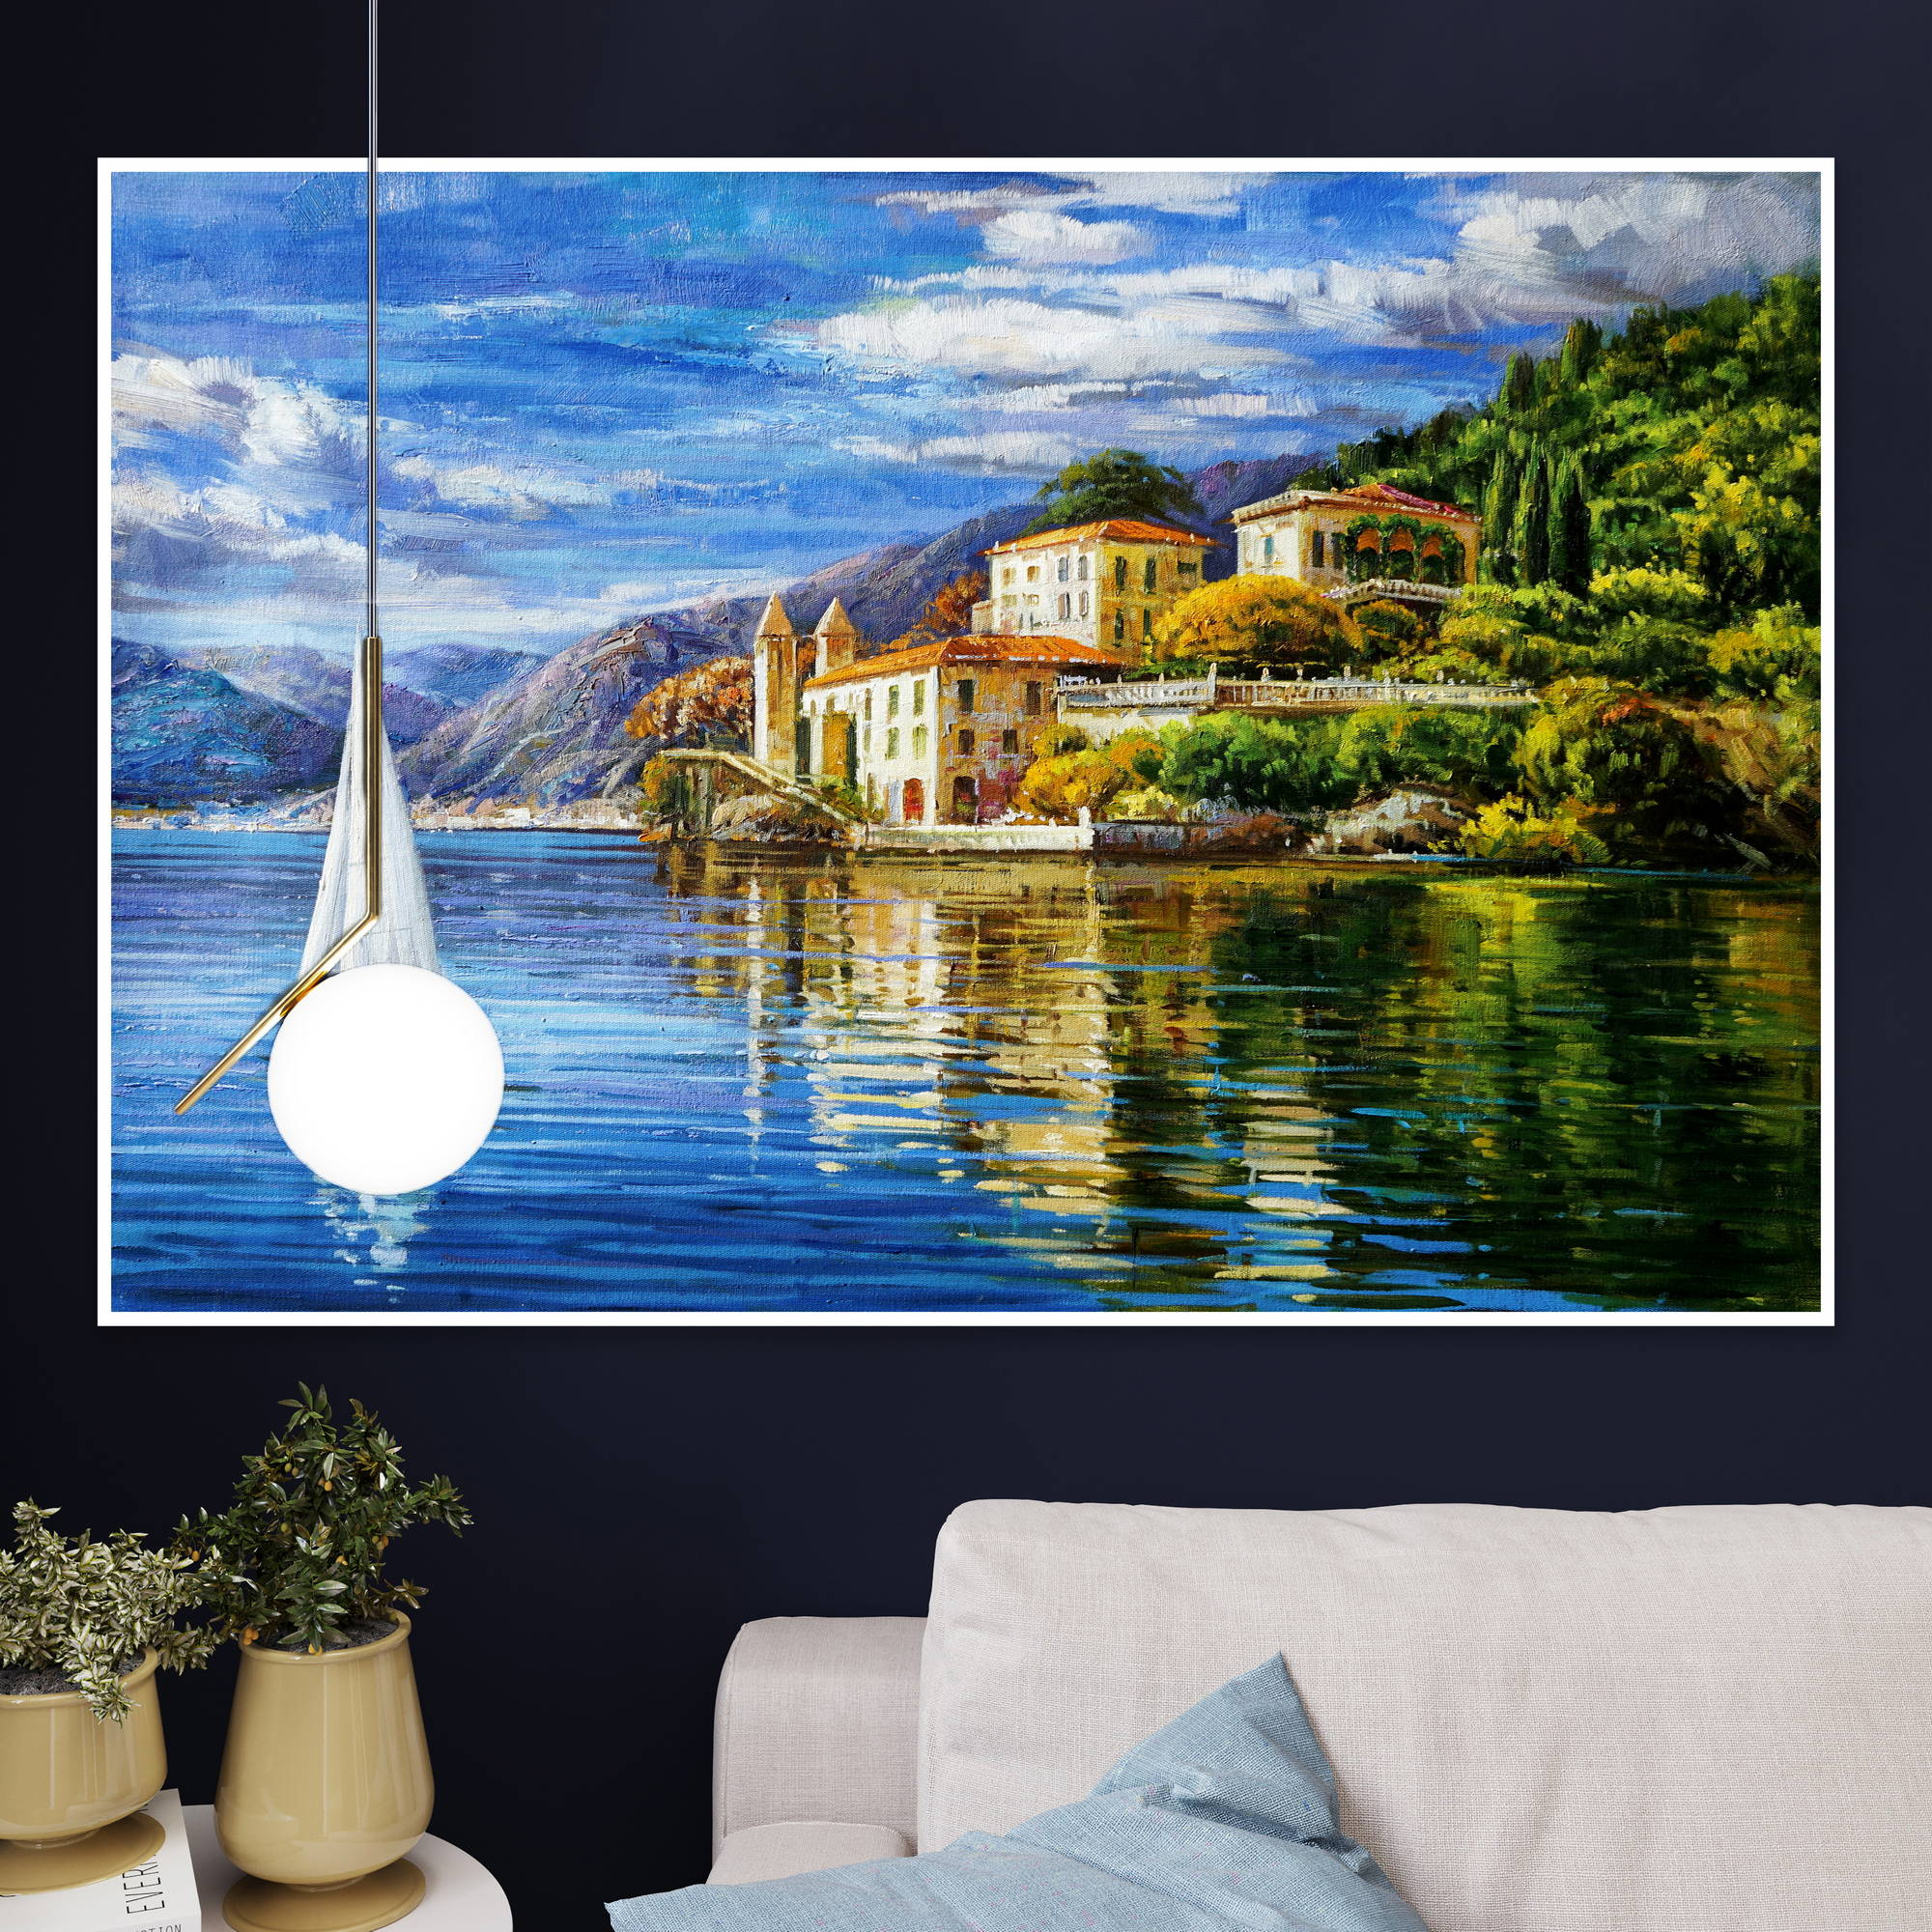 Quadro della villa del Balbianello sul lago di Garda